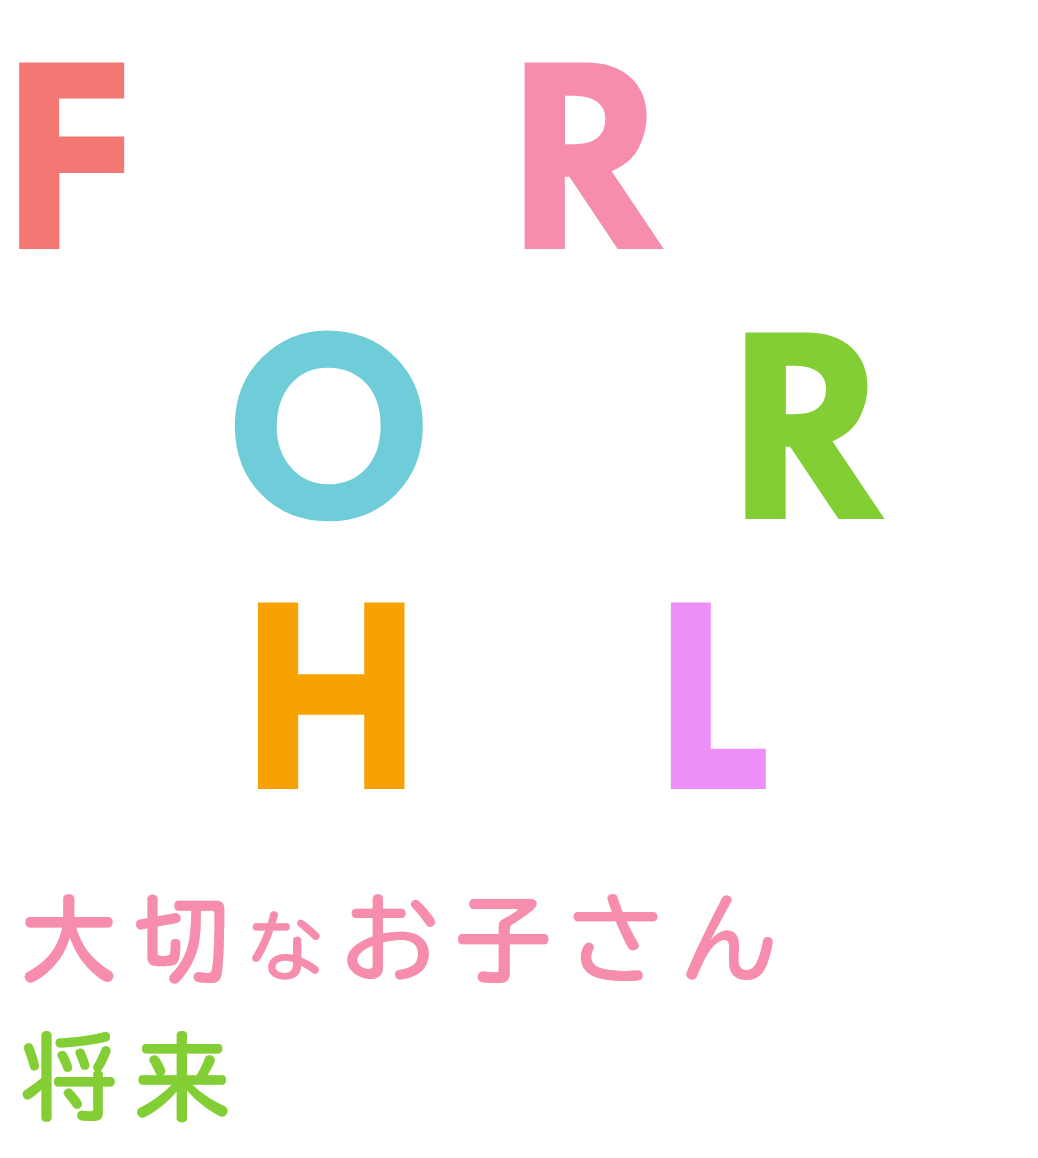 FOR YOUR CHILD 大切なお子さんの将来のために